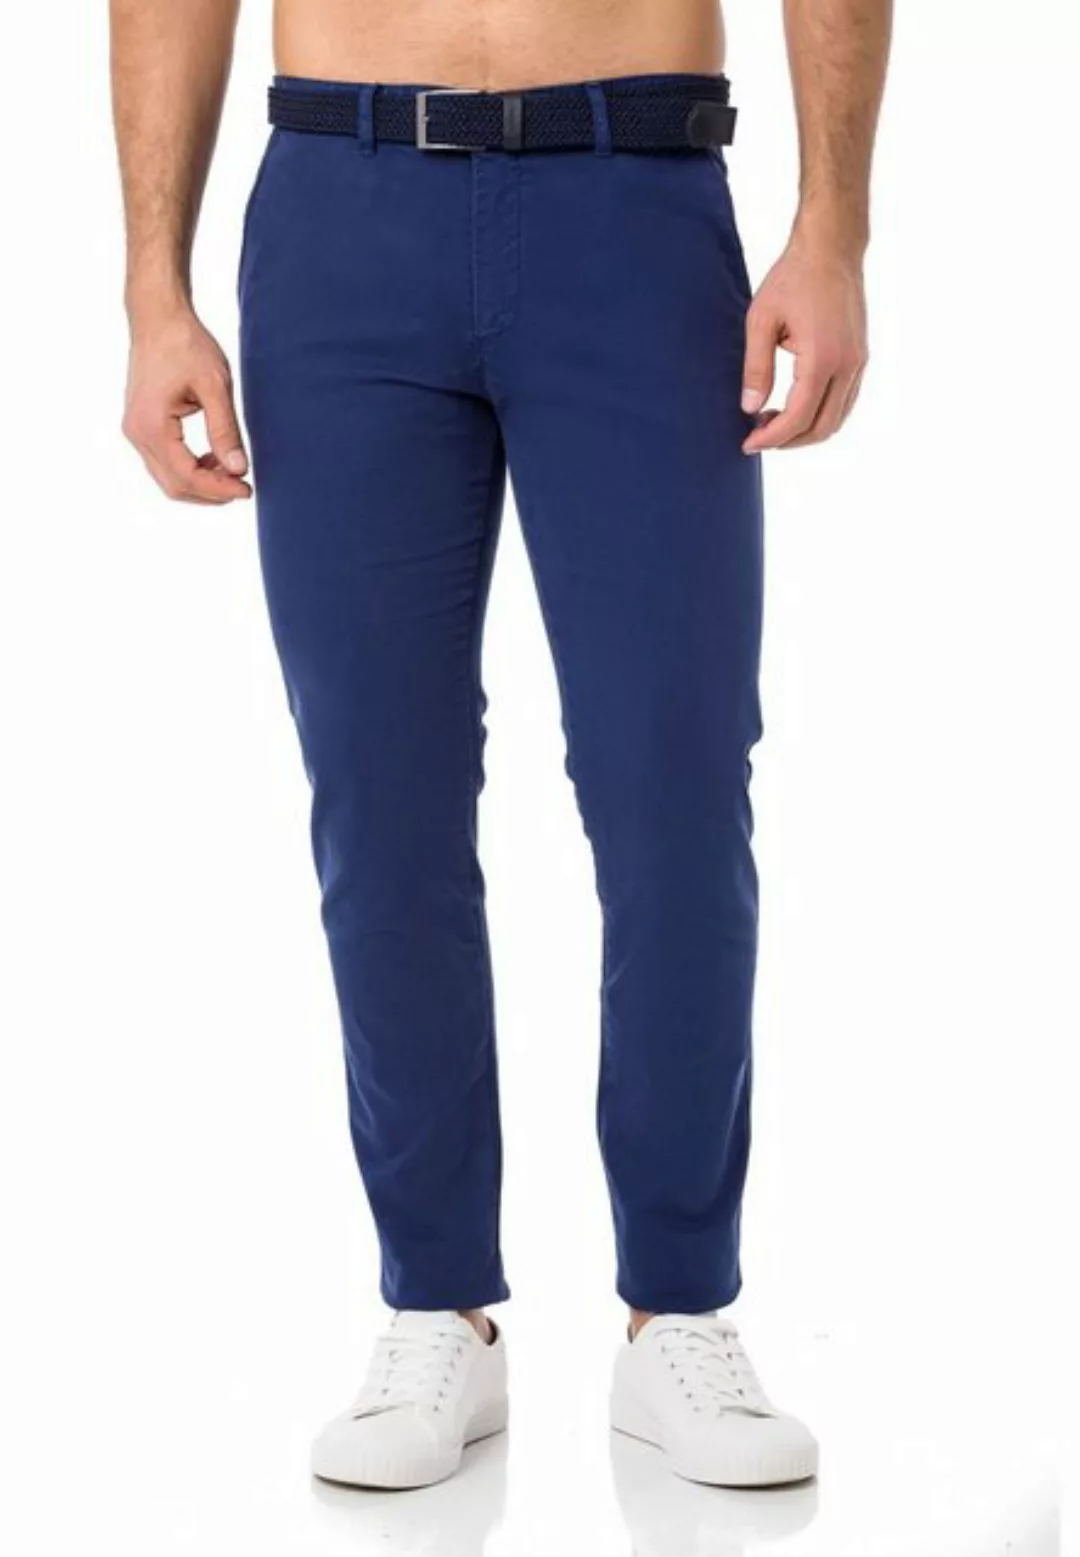 RedBridge Chinohose Chino Hose Pants mit Gürtel Indigo W36 L32 günstig online kaufen